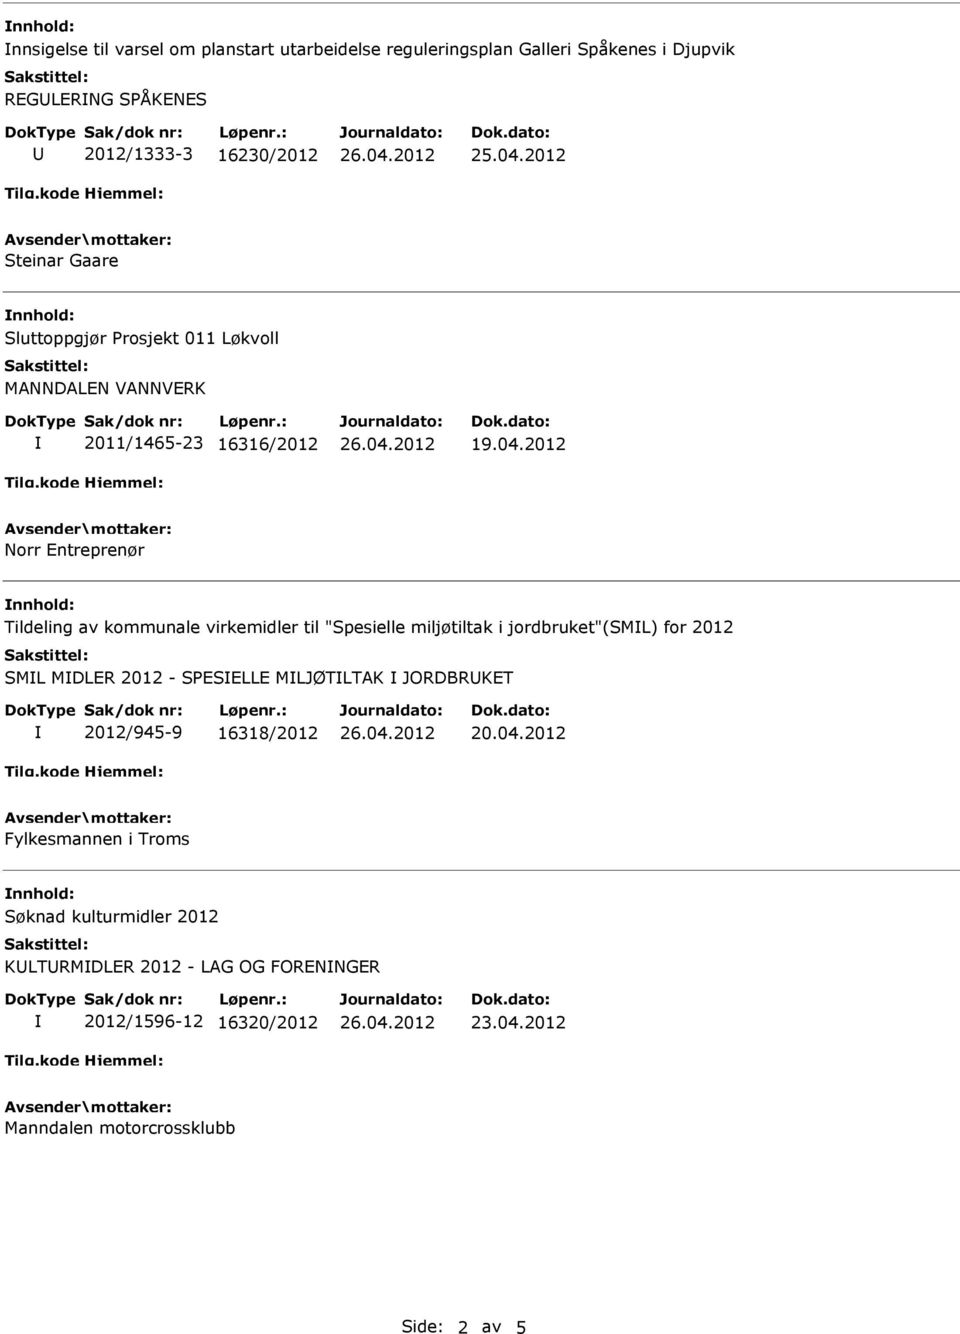 2012 Norr Entreprenør Tildeling av kommunale virkemidler til "Spesielle miljøtiltak i jordbruket"(sml) for 2012 SML MDLER 2012 - SPESELLE